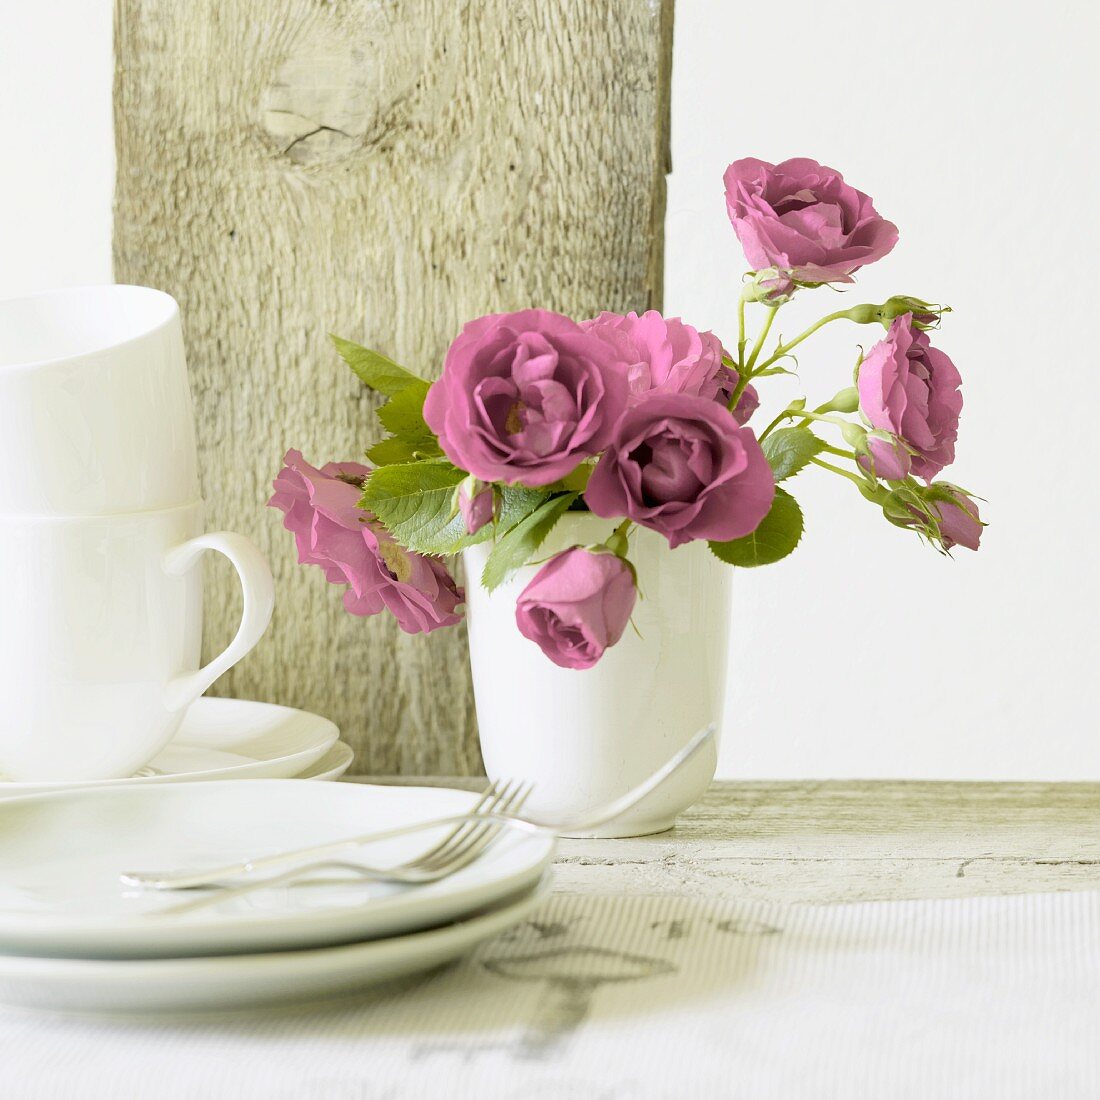 Pinkfarbene Rosen in einer Keramikvase, Kaffeetassen und Kuchenteller